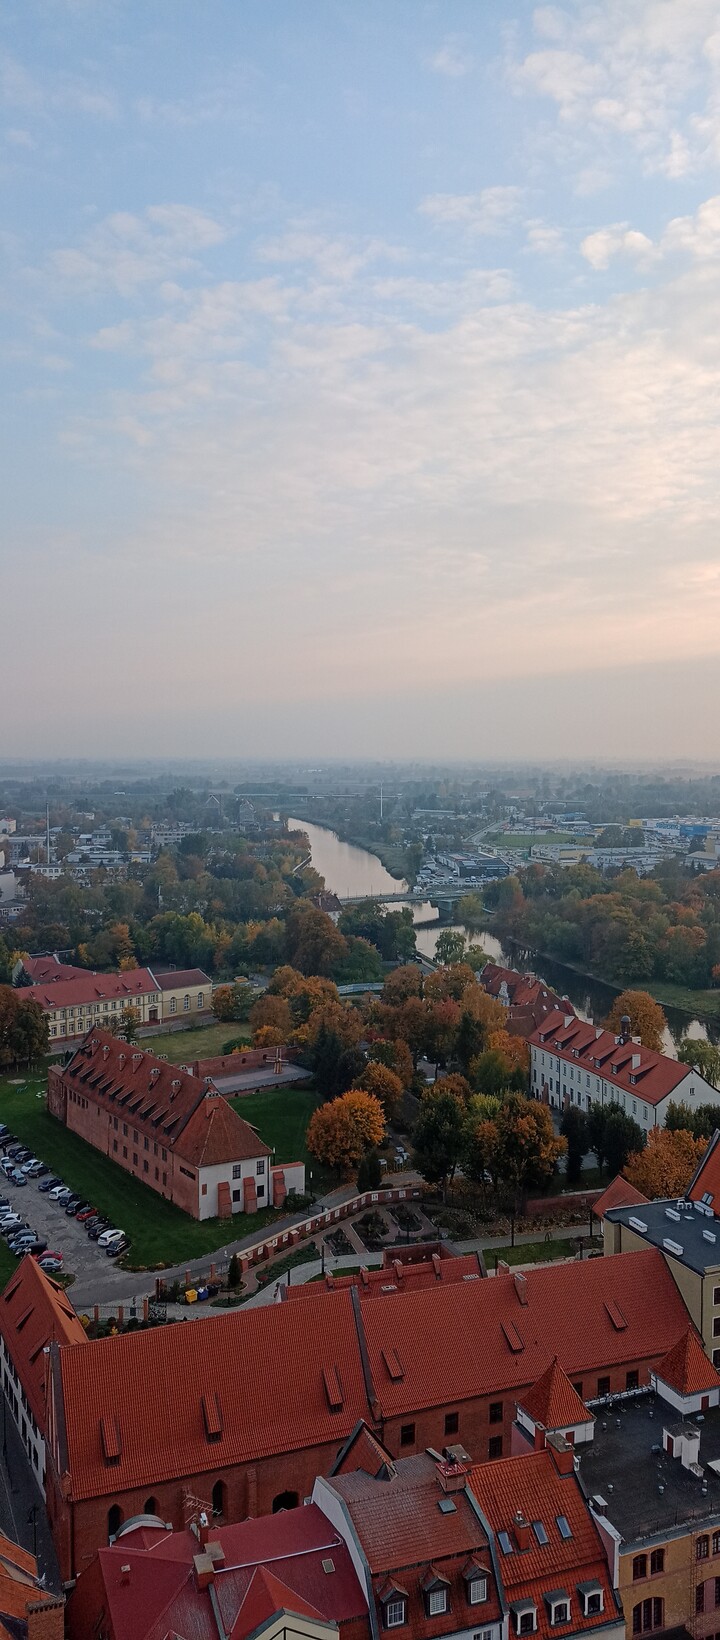 Miejsce Zamku. Kiedyś był tu Zamek Krzyżacki pozostał tylko budynek dawnej słodowni (Październik 2022)